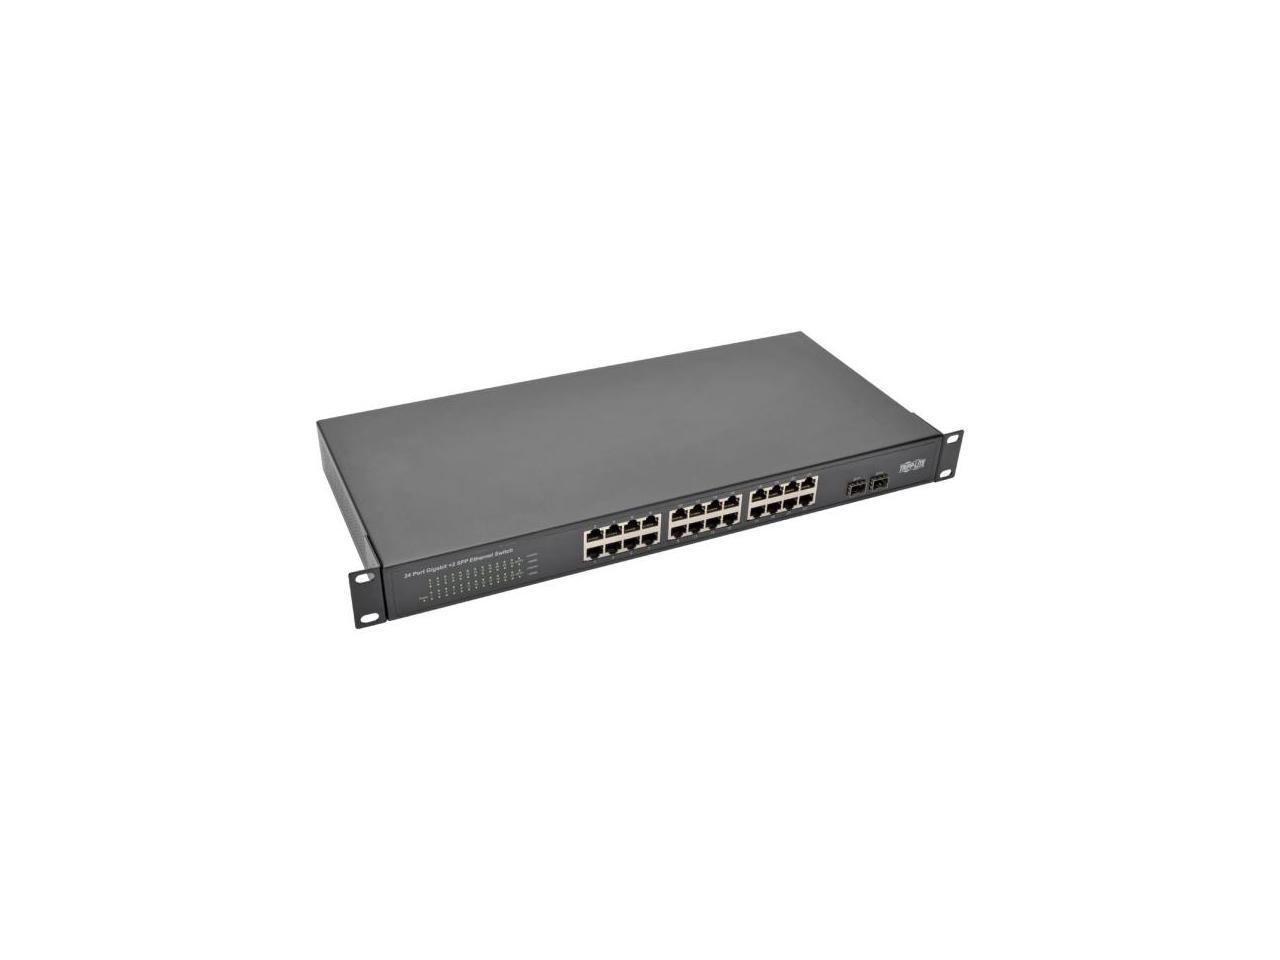 Tripp Lite 24-Port Rack-Mount/Desktop Gigabit Ethernet Unmanaged Switch, 10/100/1000 Mbps, 2 Gigabit SFP Ports, Metal Housing, 1URM (NG24) - image 5 of 5